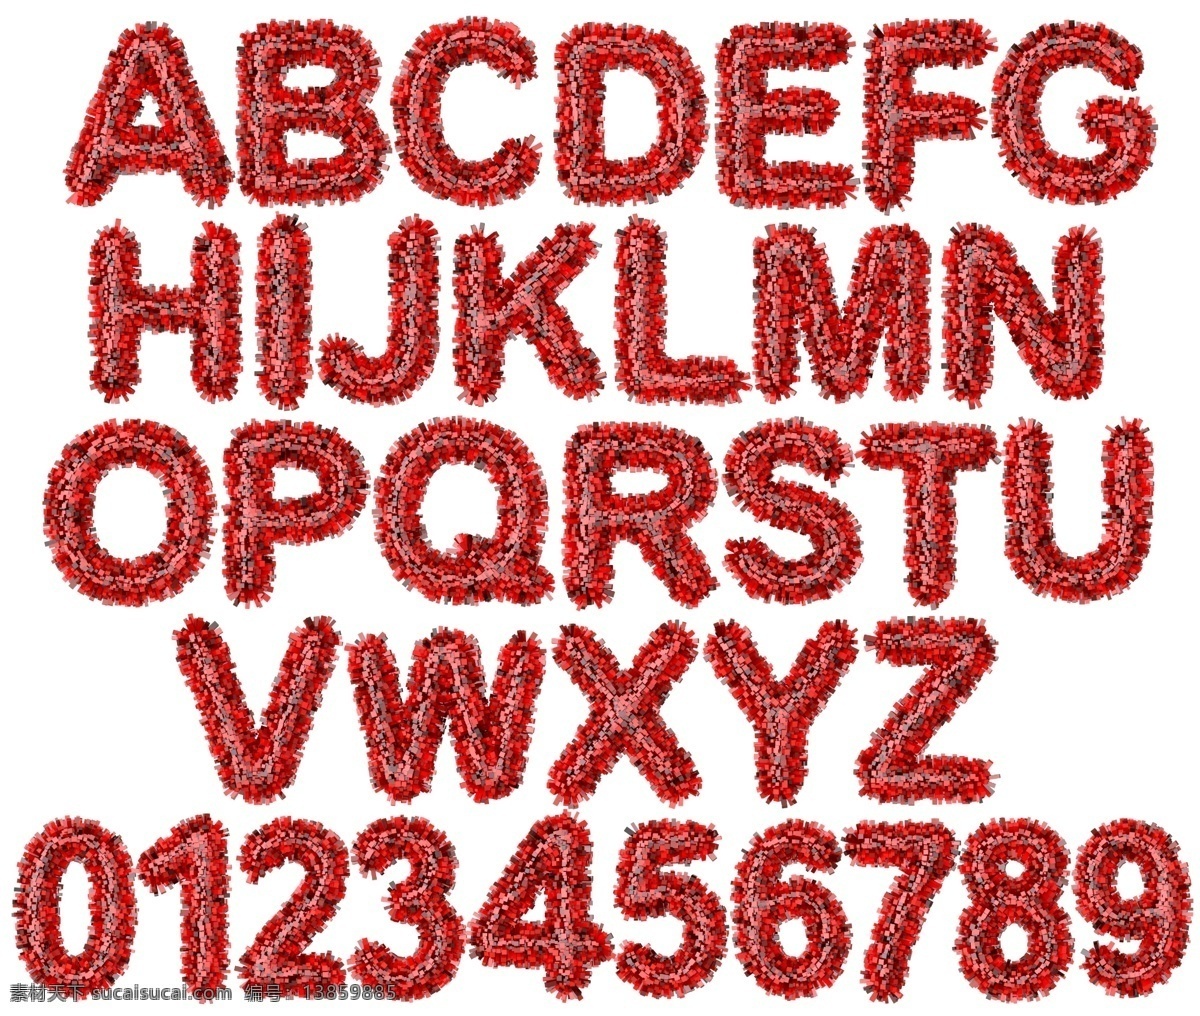 创意 英文 字母 数字 立体字母 折纸字母 多彩 艳丽 时尚 梦幻 英文字体 英文艺术字 拼音 拼音字母 字母设计 艺术字母 英文签名 变形字母 创意字母 时尚字母 设计字母 彩色字母 拼图字母 英文字母 创意英文字母 艺术英文字母